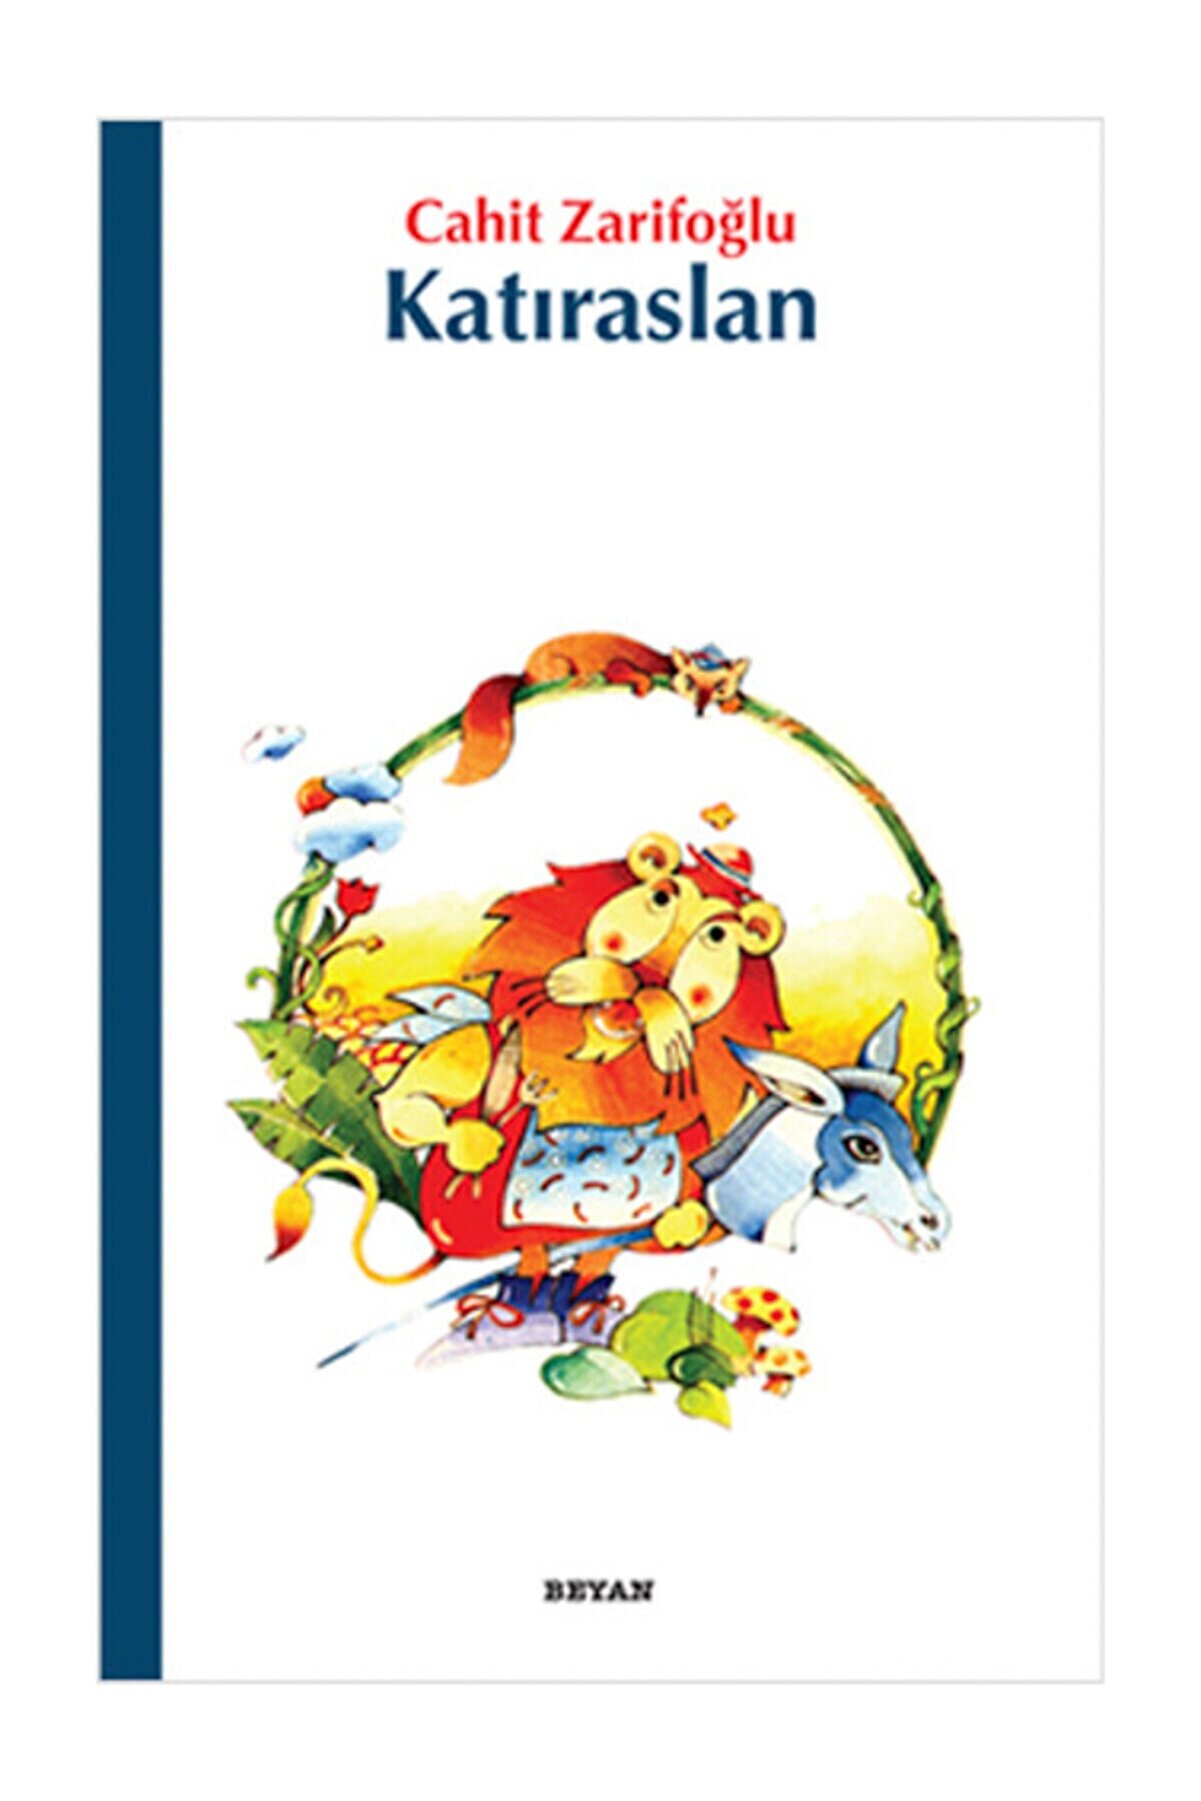 Beyan Yayınları Gülücük Çocuk Kitapları 03 Katıraslan Beyan Yayınları / - Cahit Zarifoğlu